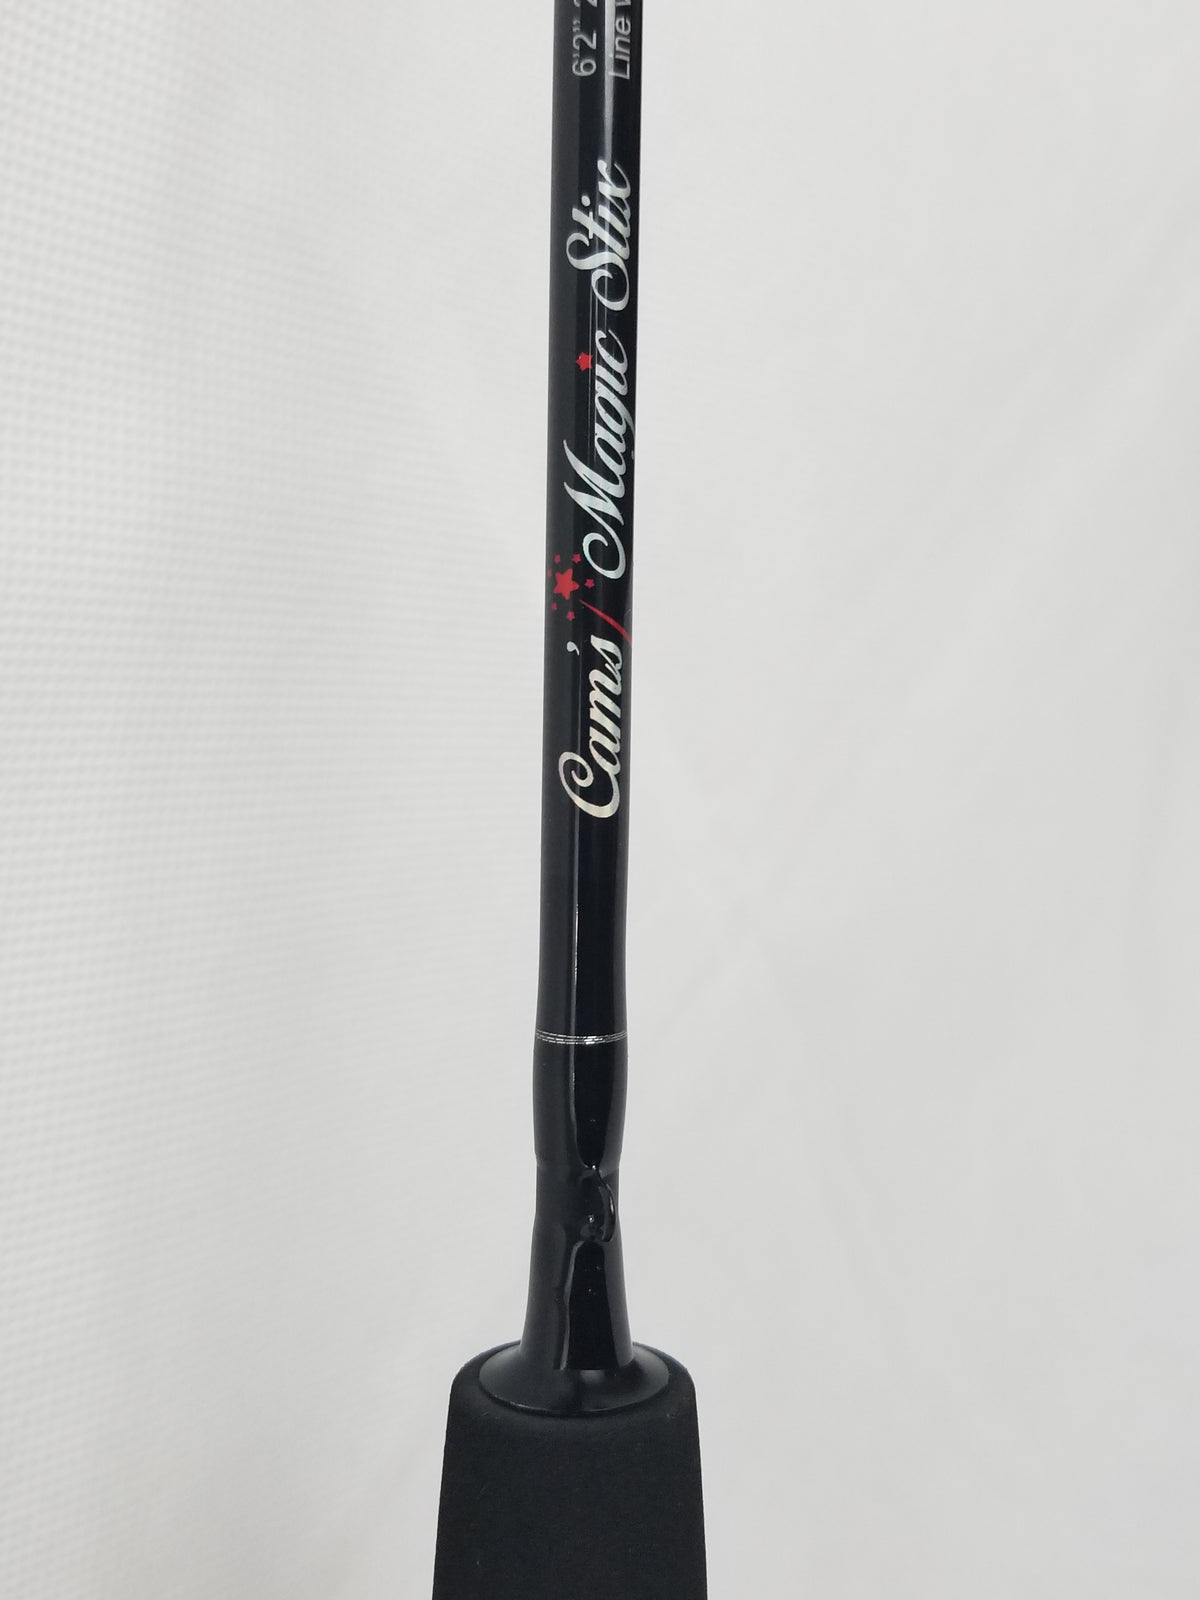 Cam's 6'2" (6) Ball Bearings Magic Stik Rod & Reel Combo